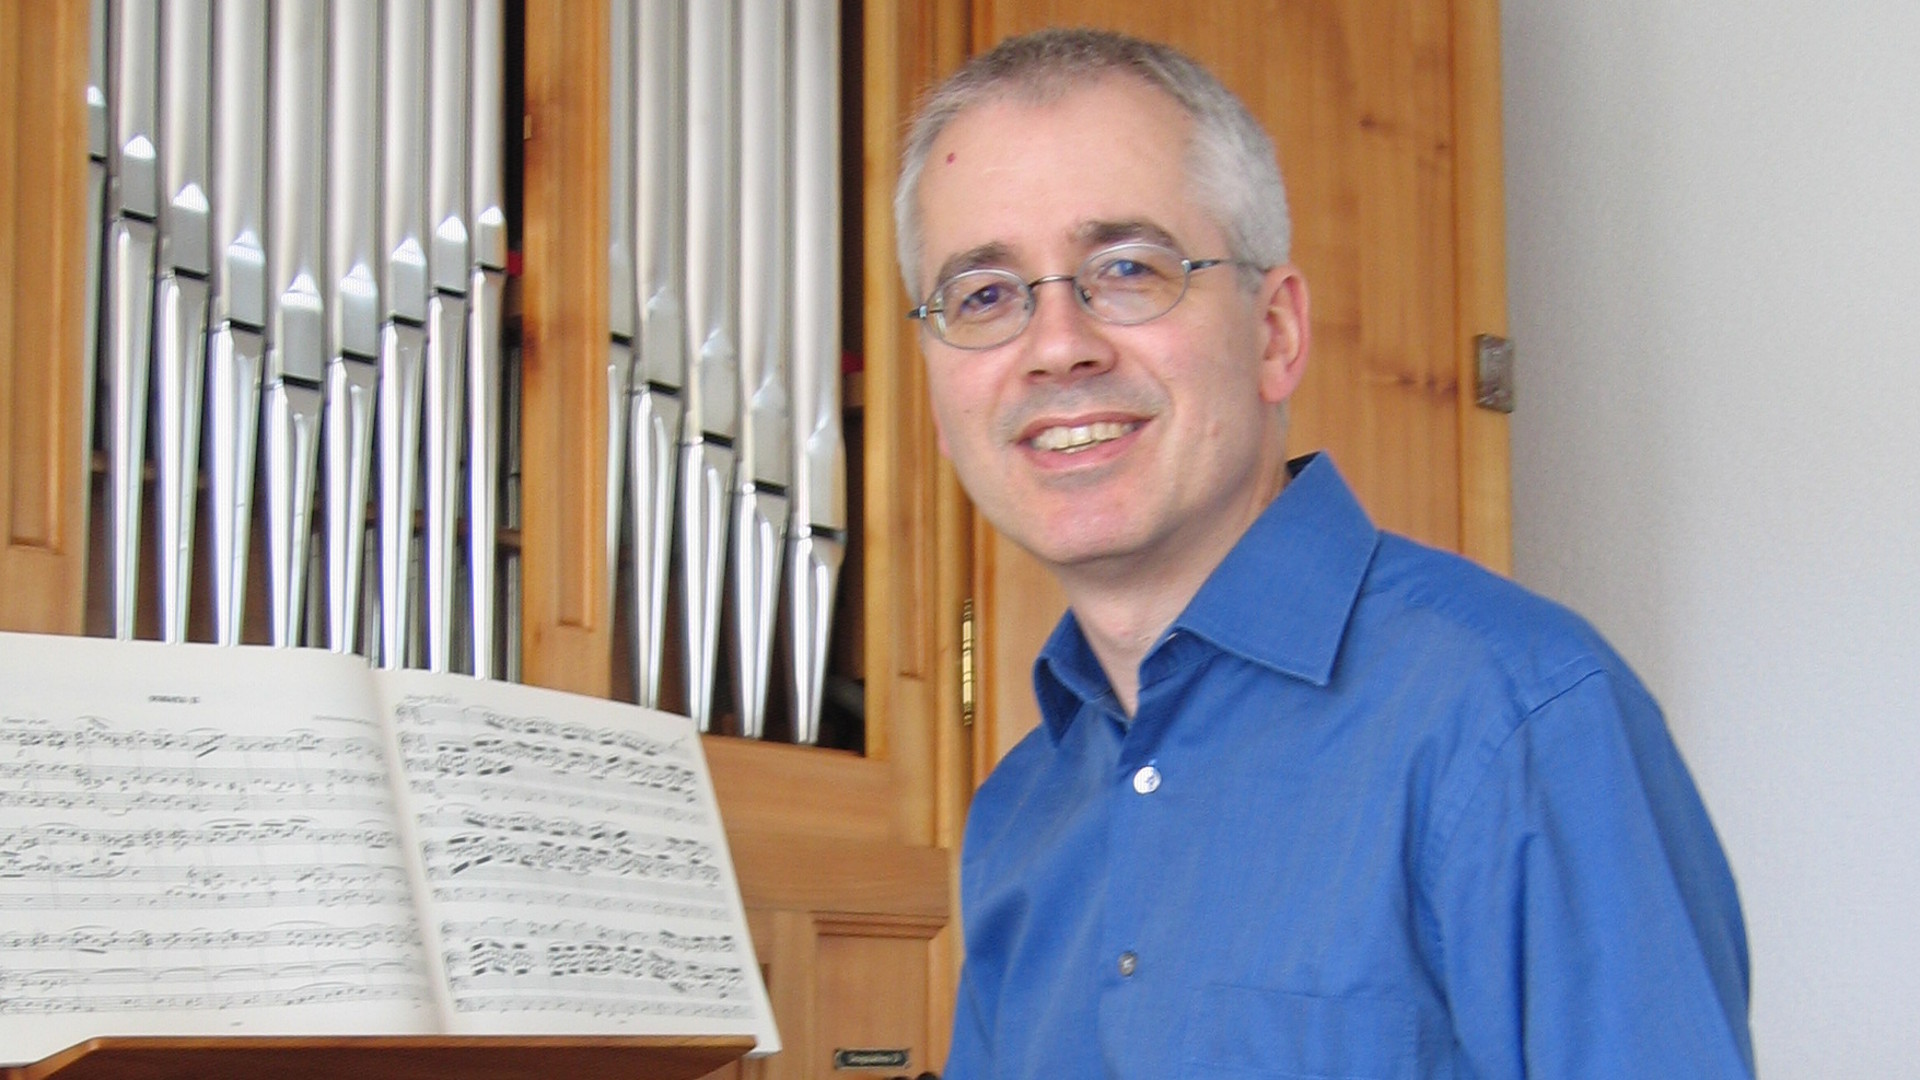 Martin Hobi, Kirchenmusiker und Professor an der Hochschule Luzern - Musik.